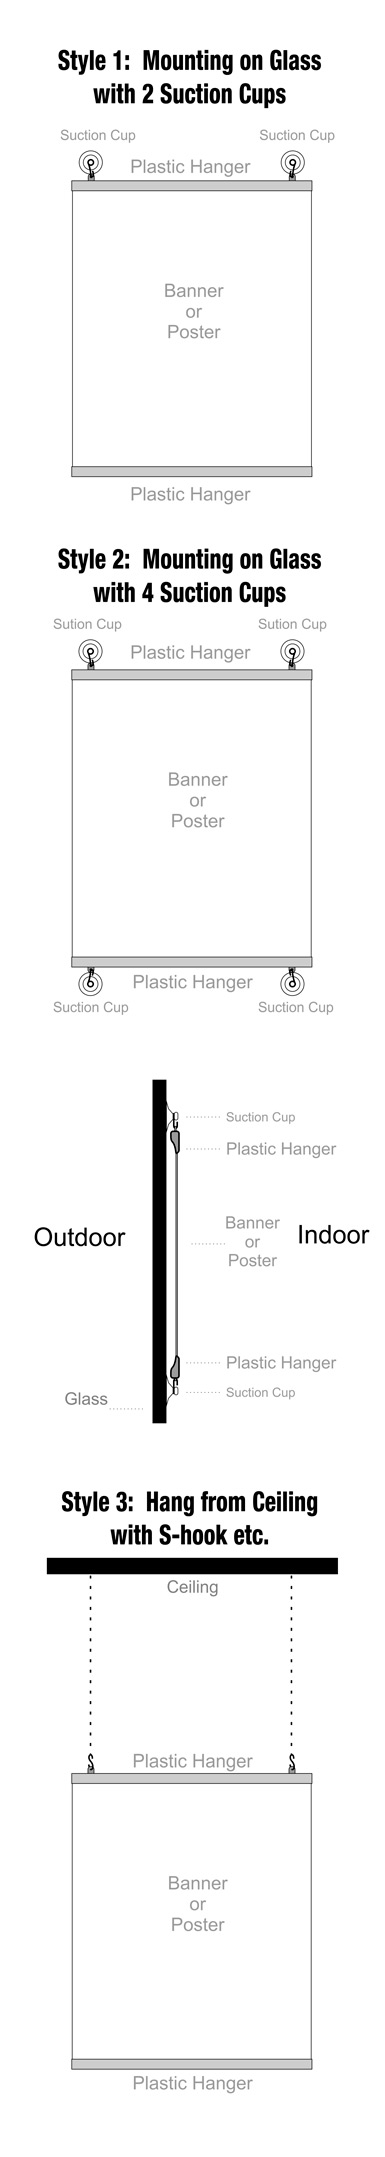 How to Hang Plastic Hanger